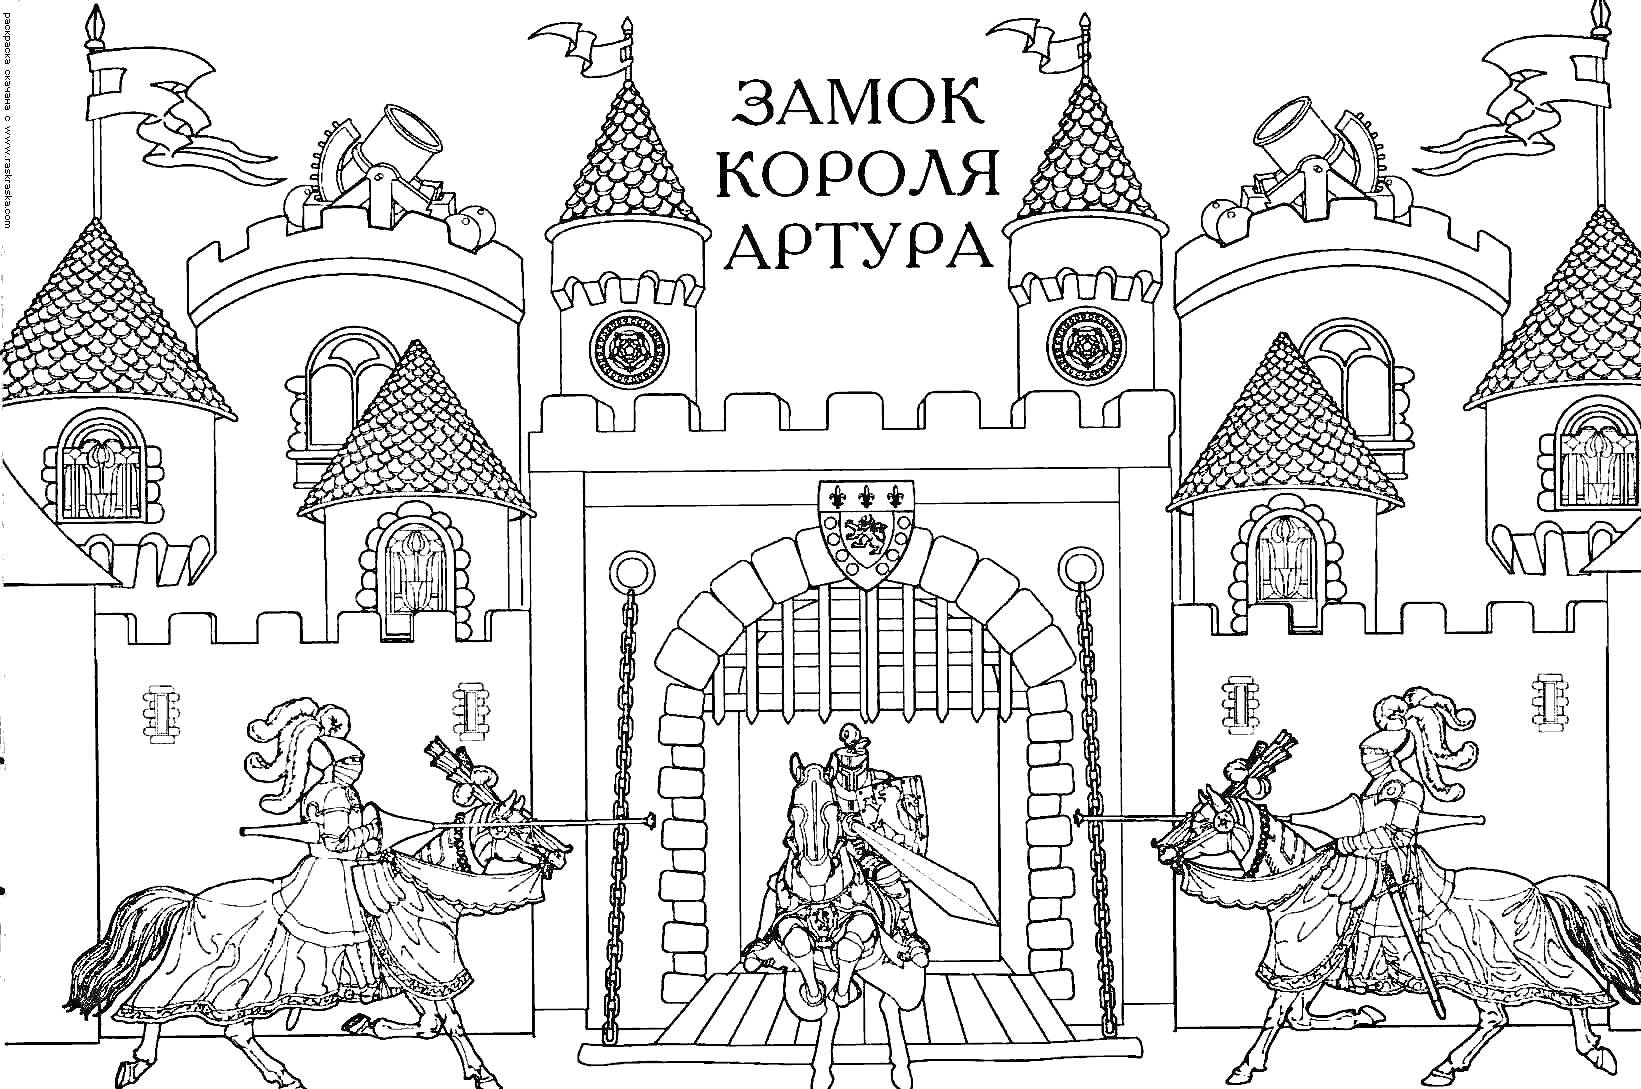 Раскраска Замок короля Артура, в котором изображены замок с башнями, зубчатыми стенами, арочным входом и вратами. Перед замком стоят трое рыцарей на лошадях в доспехах, один из которых находится прямо перед входом, а двое других по бокам.